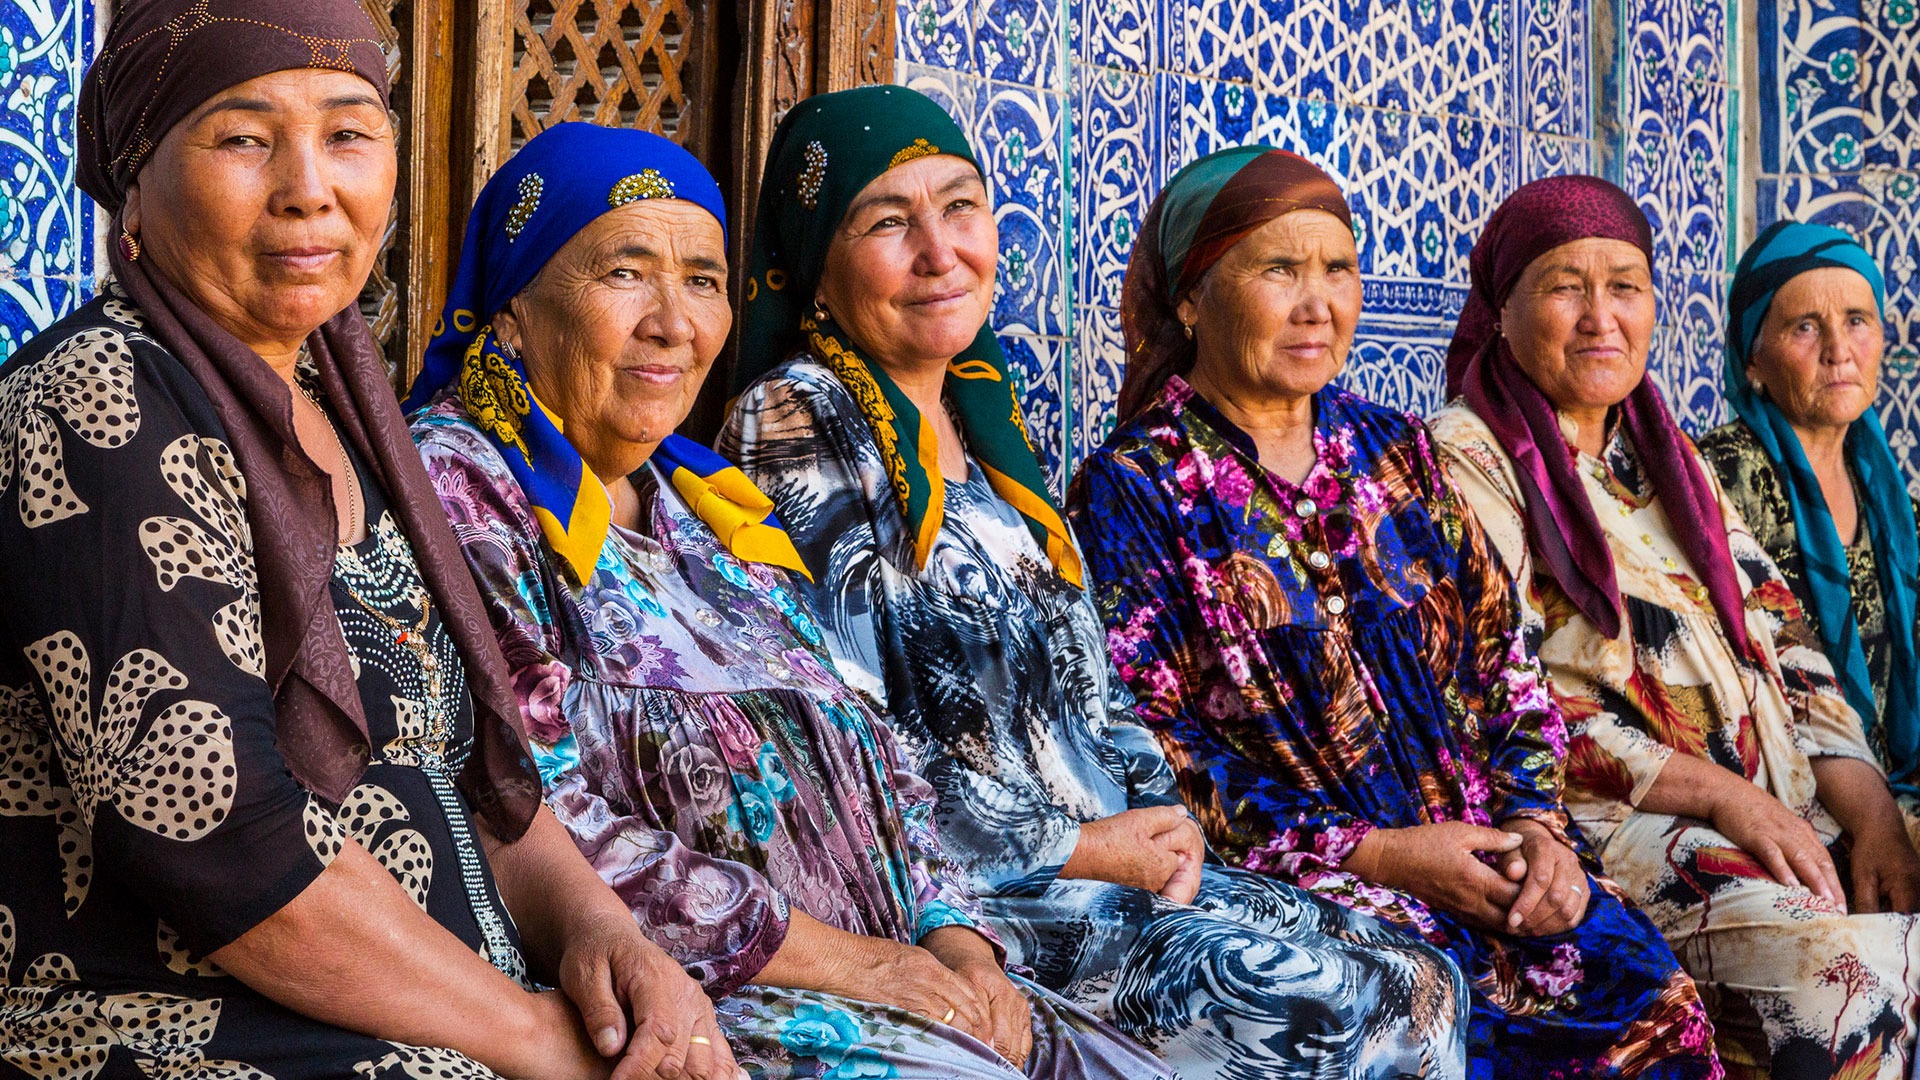 Uzbek women in colorful dresses in Khiva, Uzbekistan